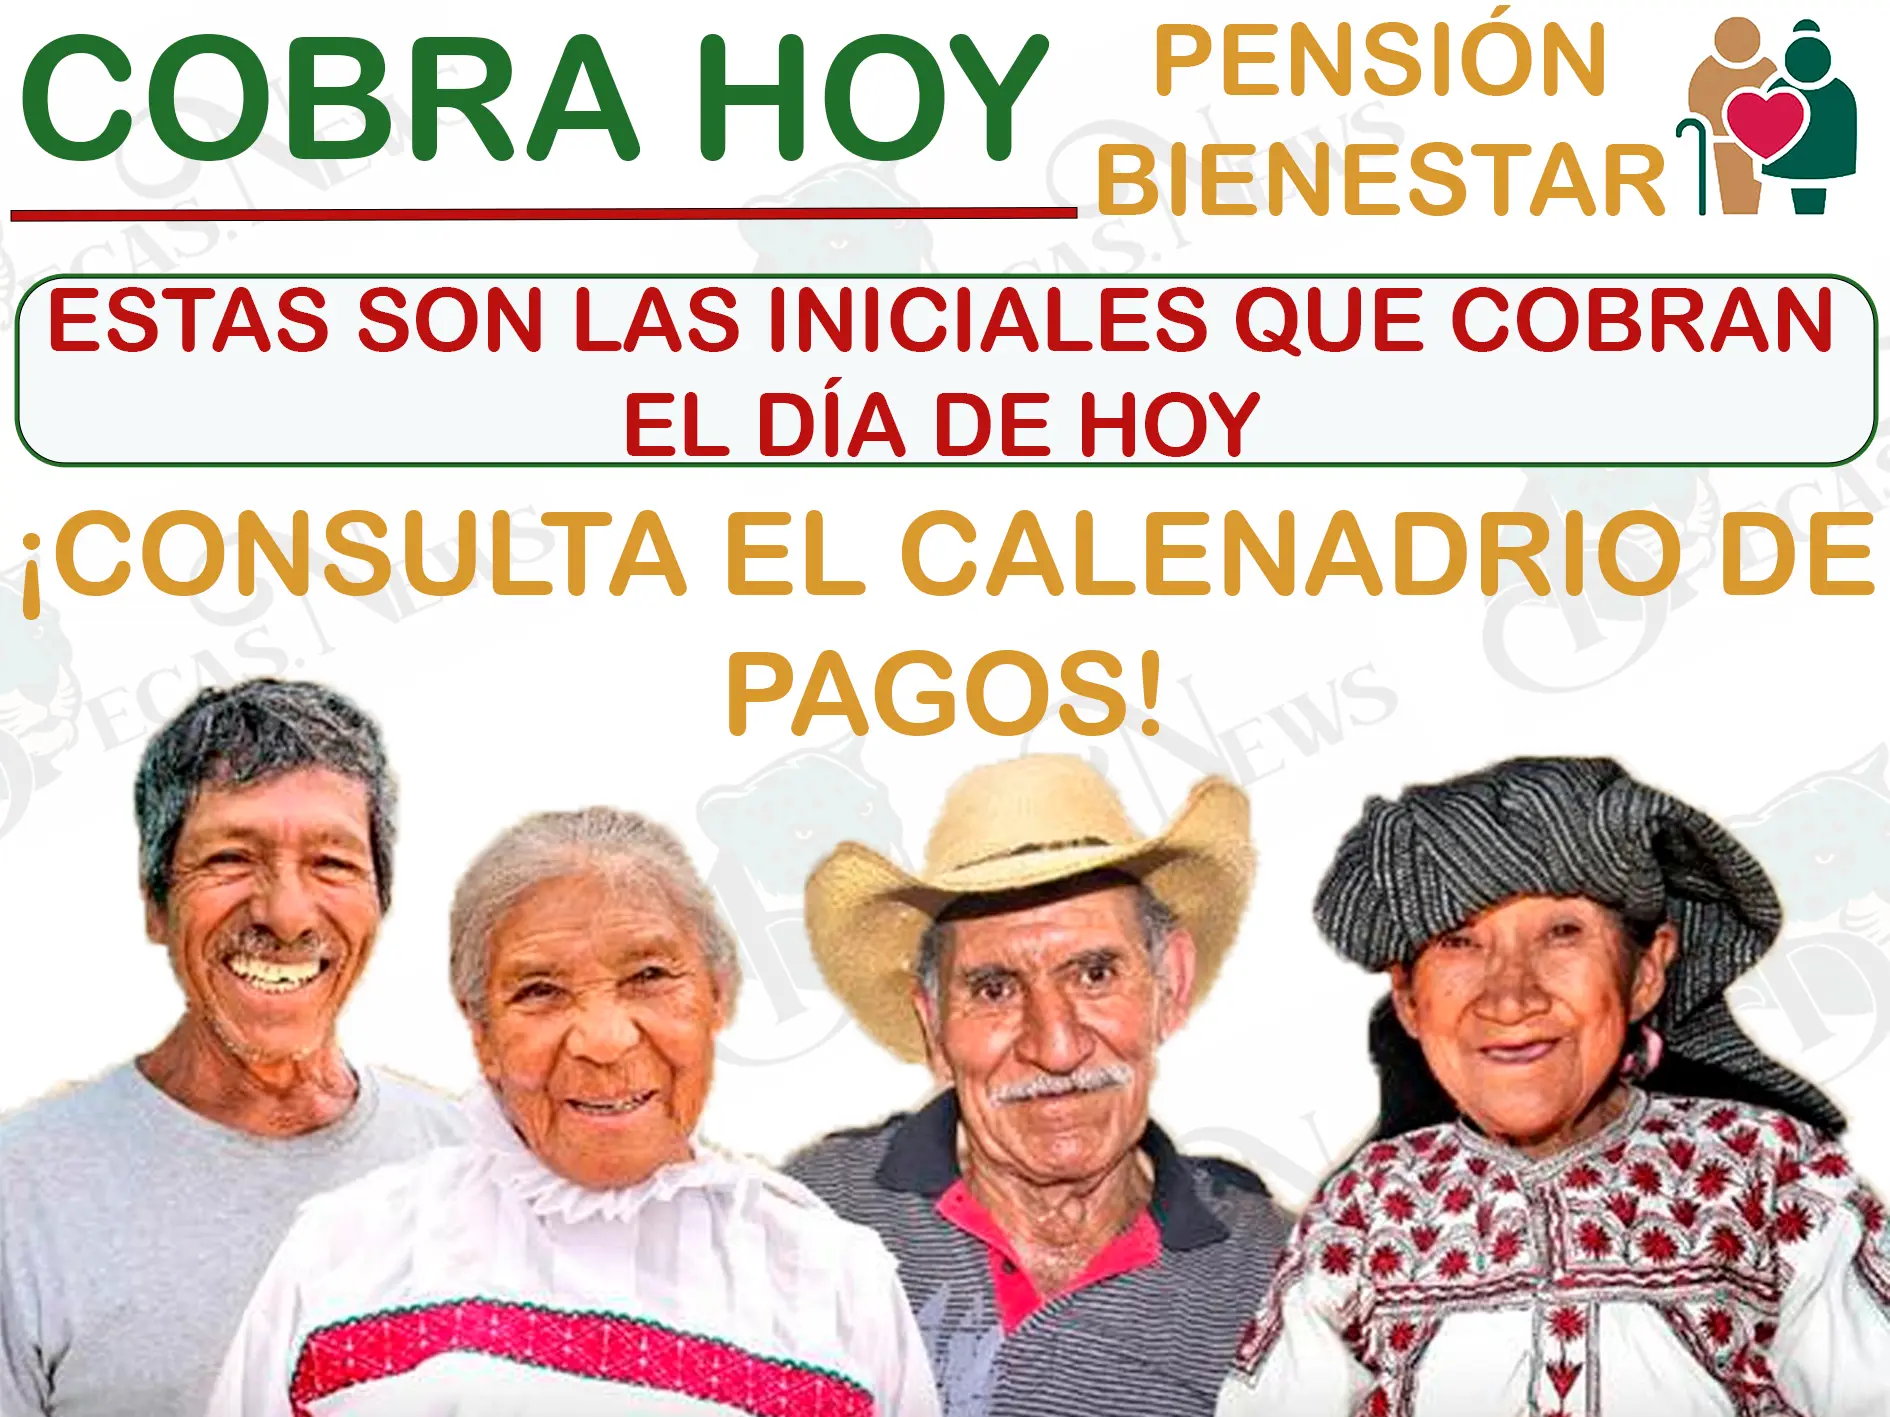 ¡Felicidades! Estos son los abuelitos que les corresponde cobrar su depósito de $ 6,000 pesos el día de hoy